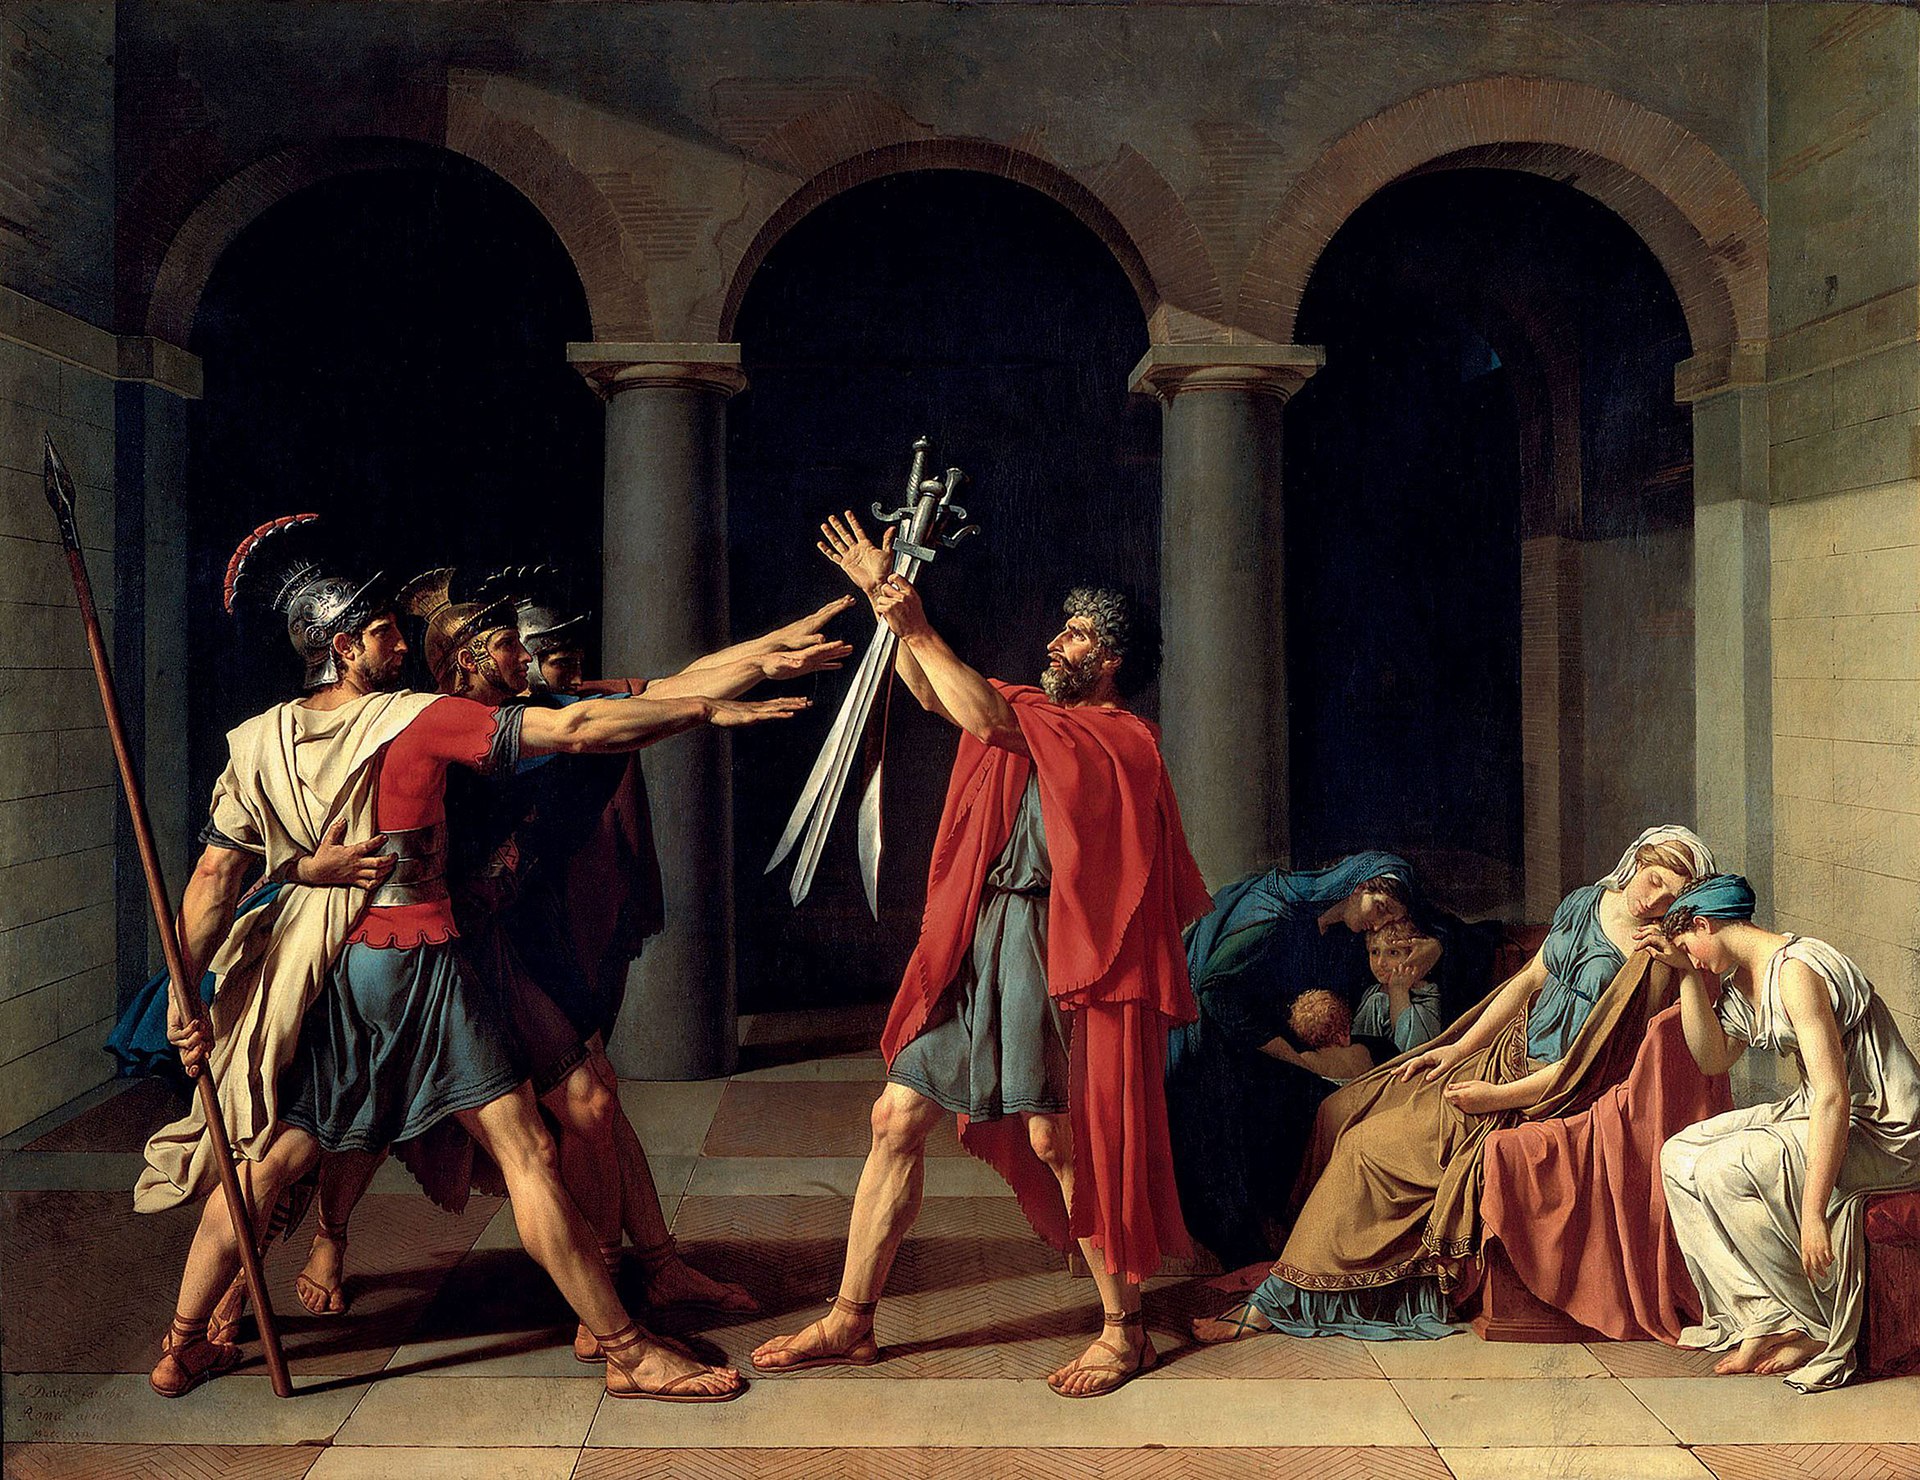 Le statut de guerrier à Rome - par Jacques Le Goff